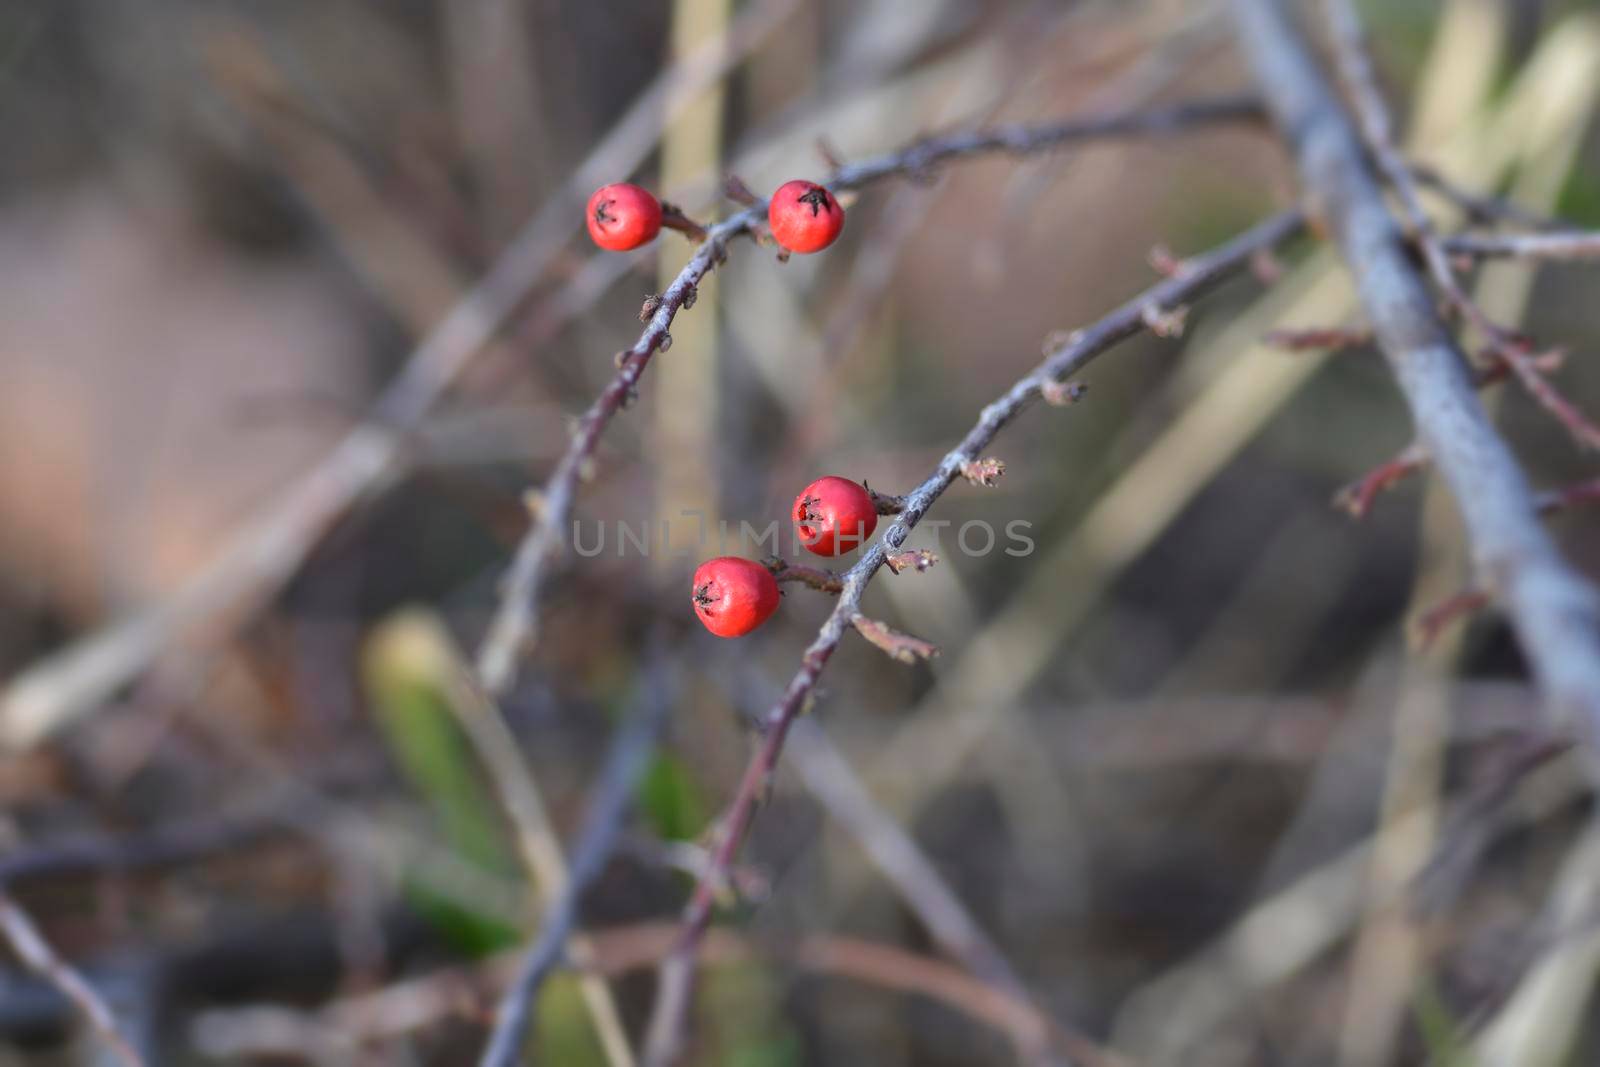 Rock cotoneaster red berries - Latin name - Cotoneaster horizontalis